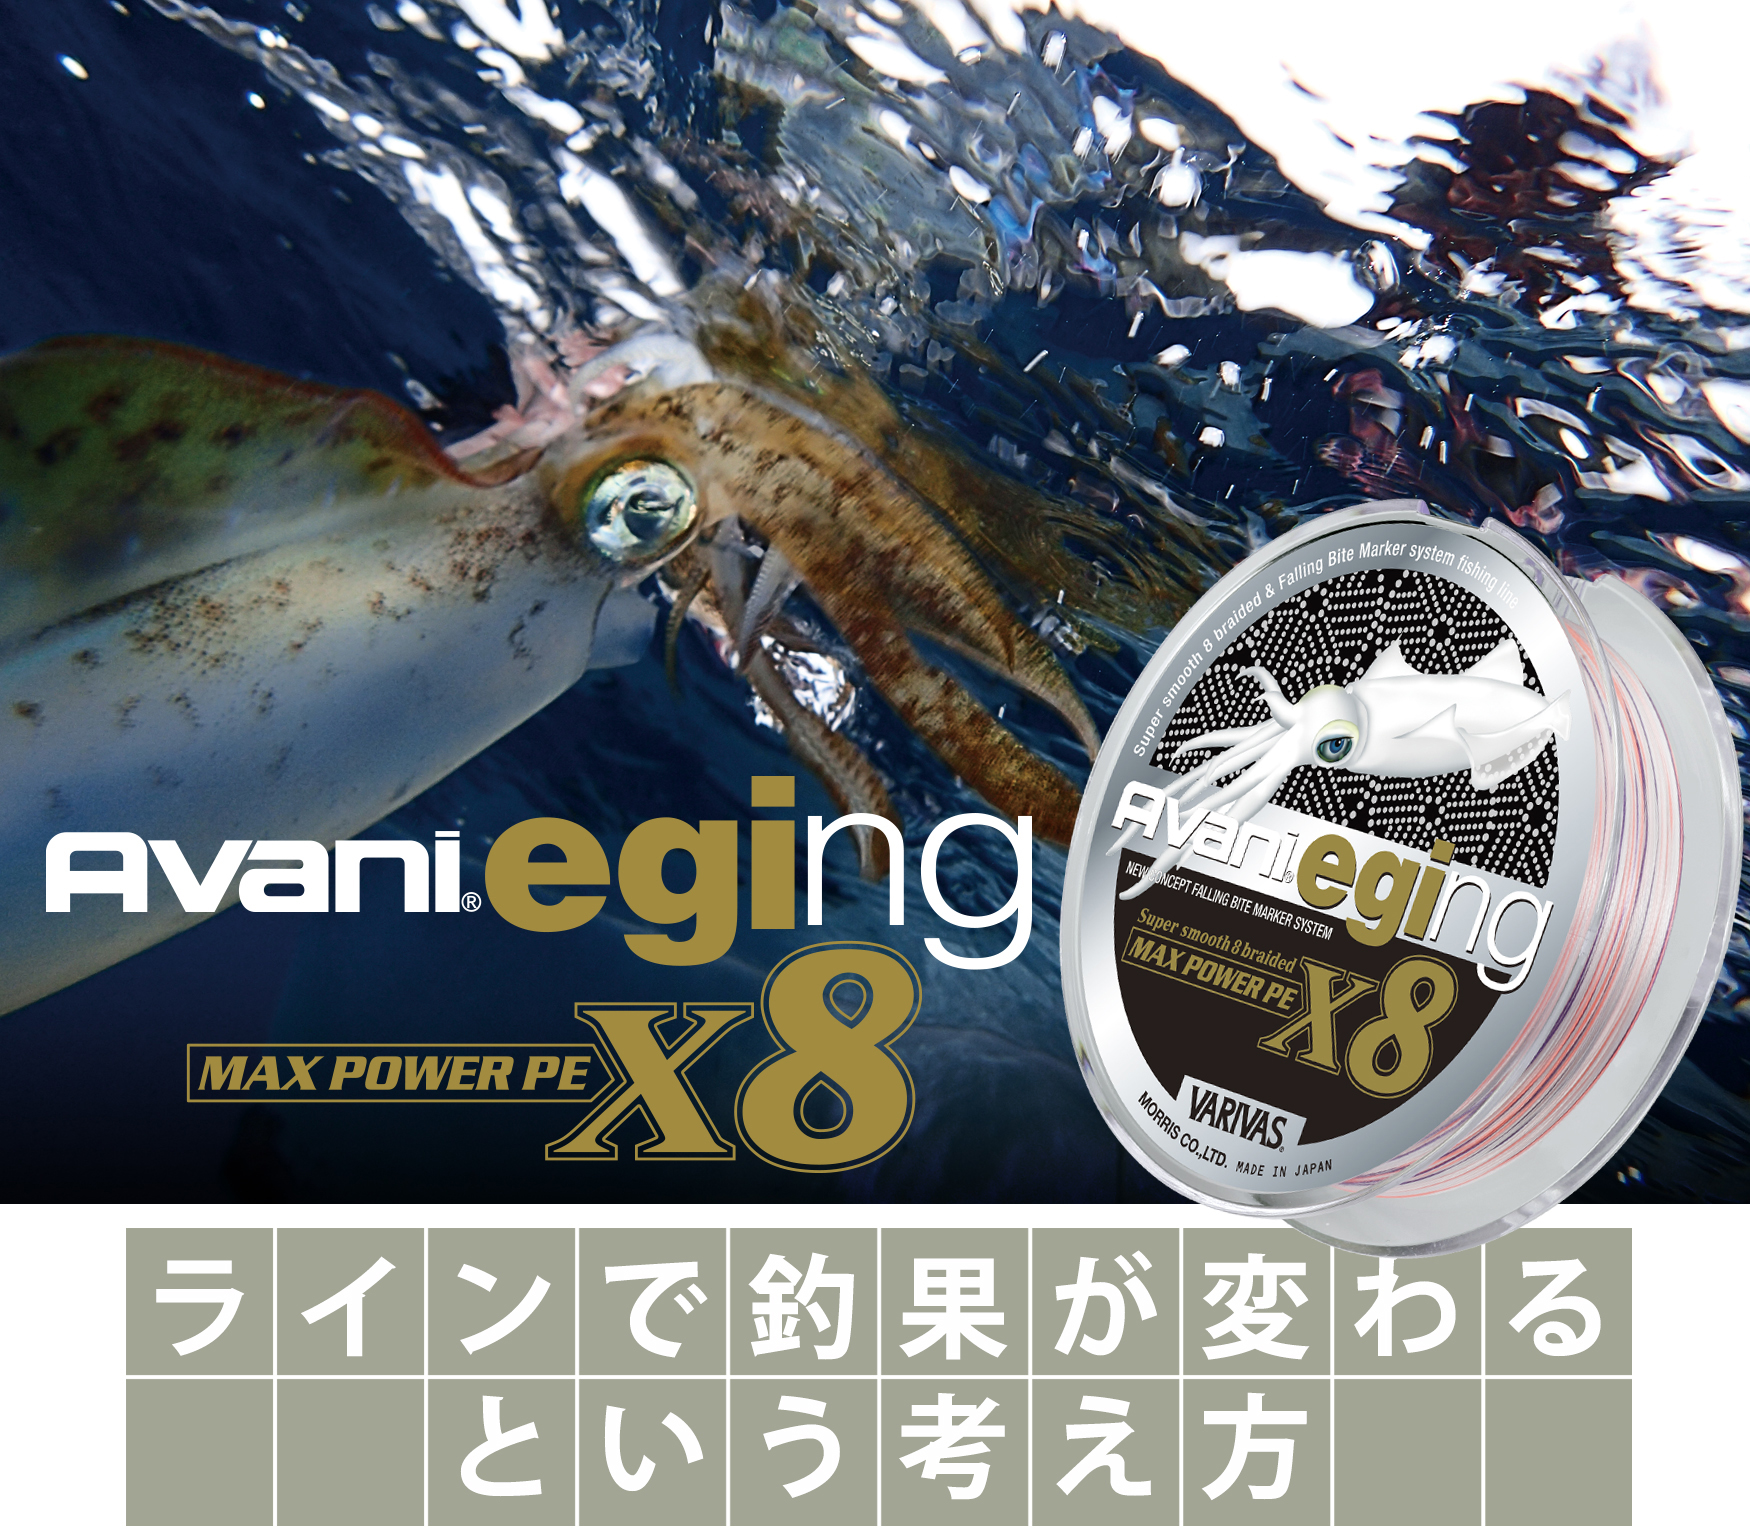 VARIVASバリバス ライン アバニ エギング マックスパワーPE X8 15